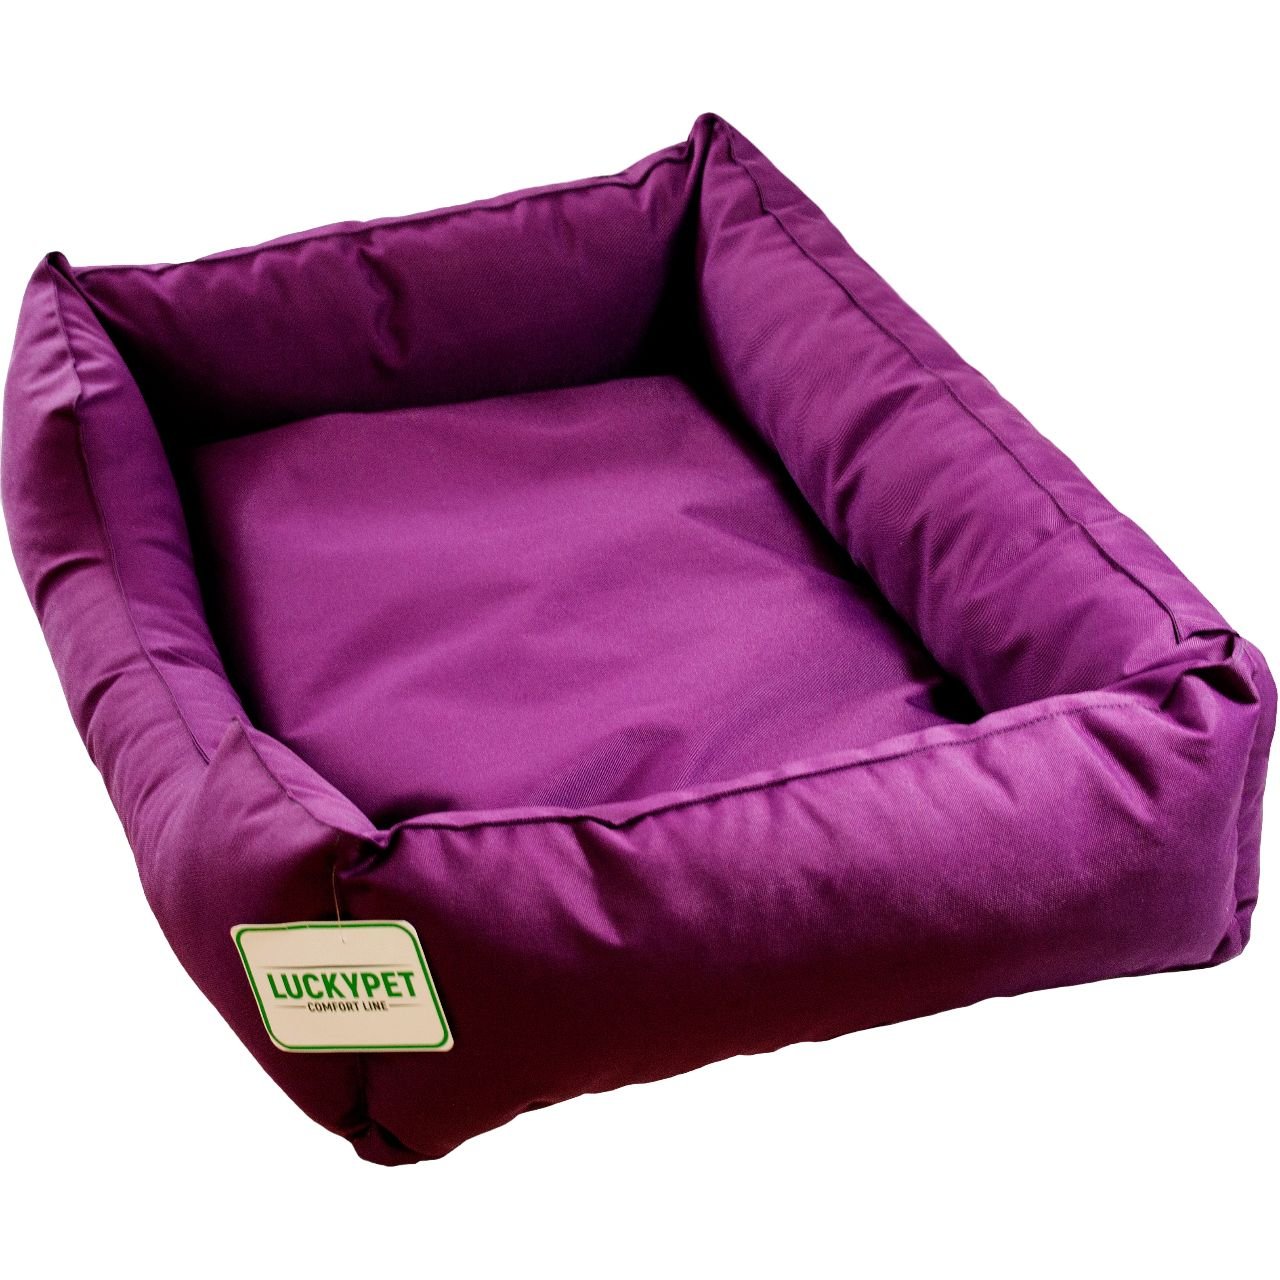 Лежак Lucky Pet Маркіз №6, 80x120x26 см, фіолетовий - фото 1